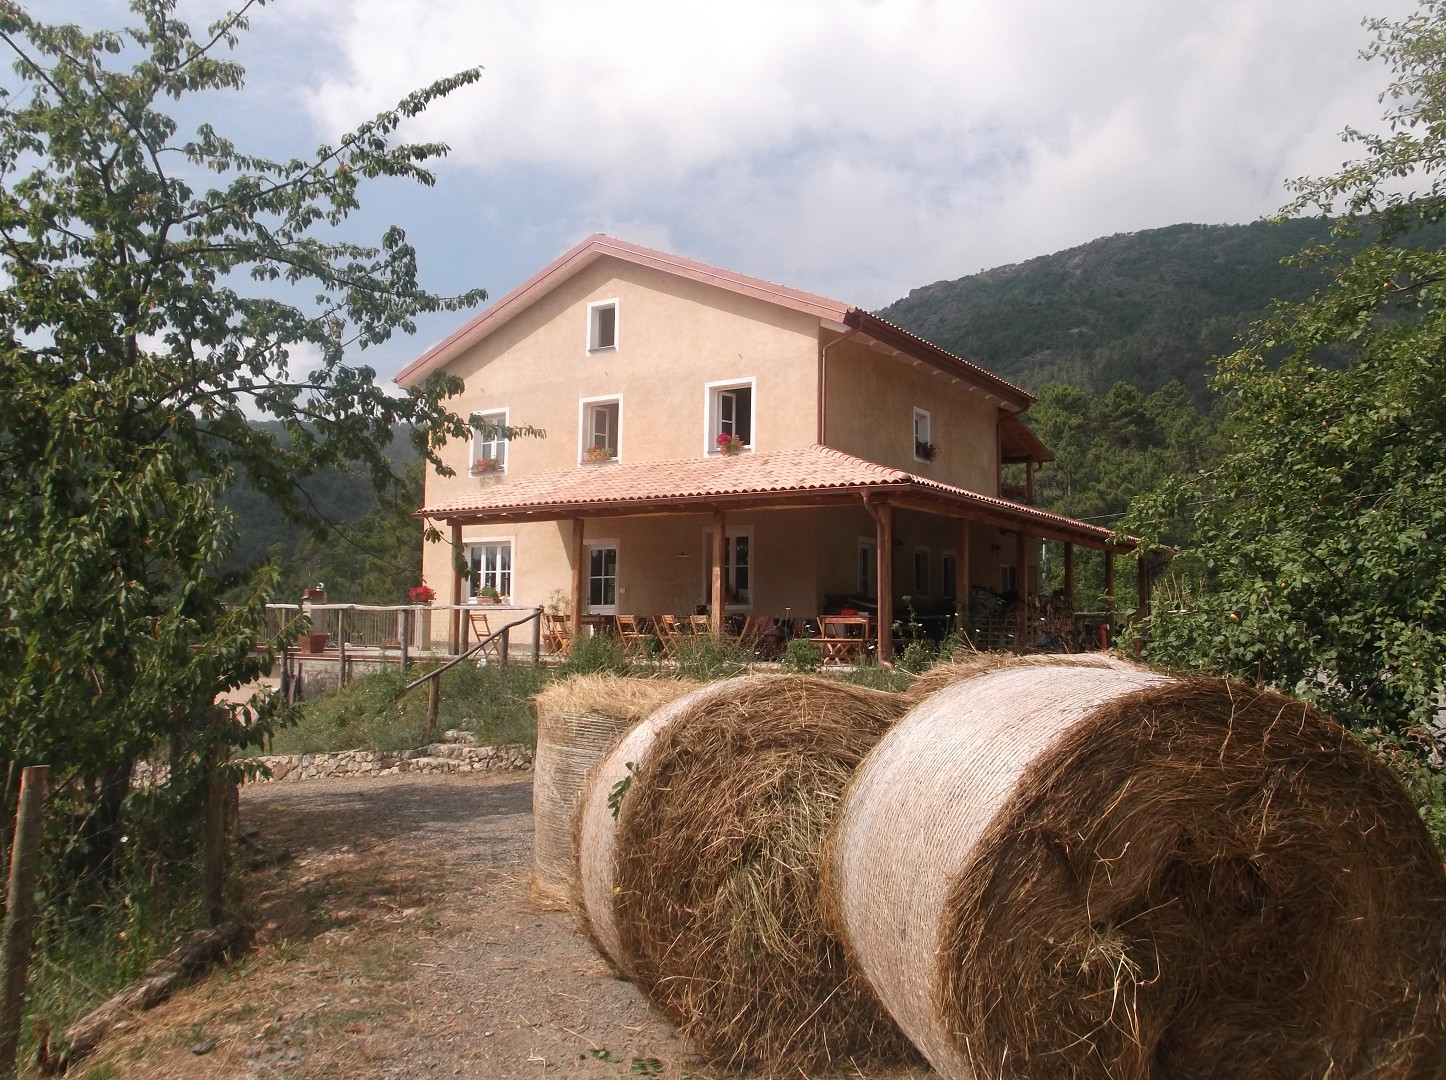 Vacanze in una casa di paglia in Emilia Romagna